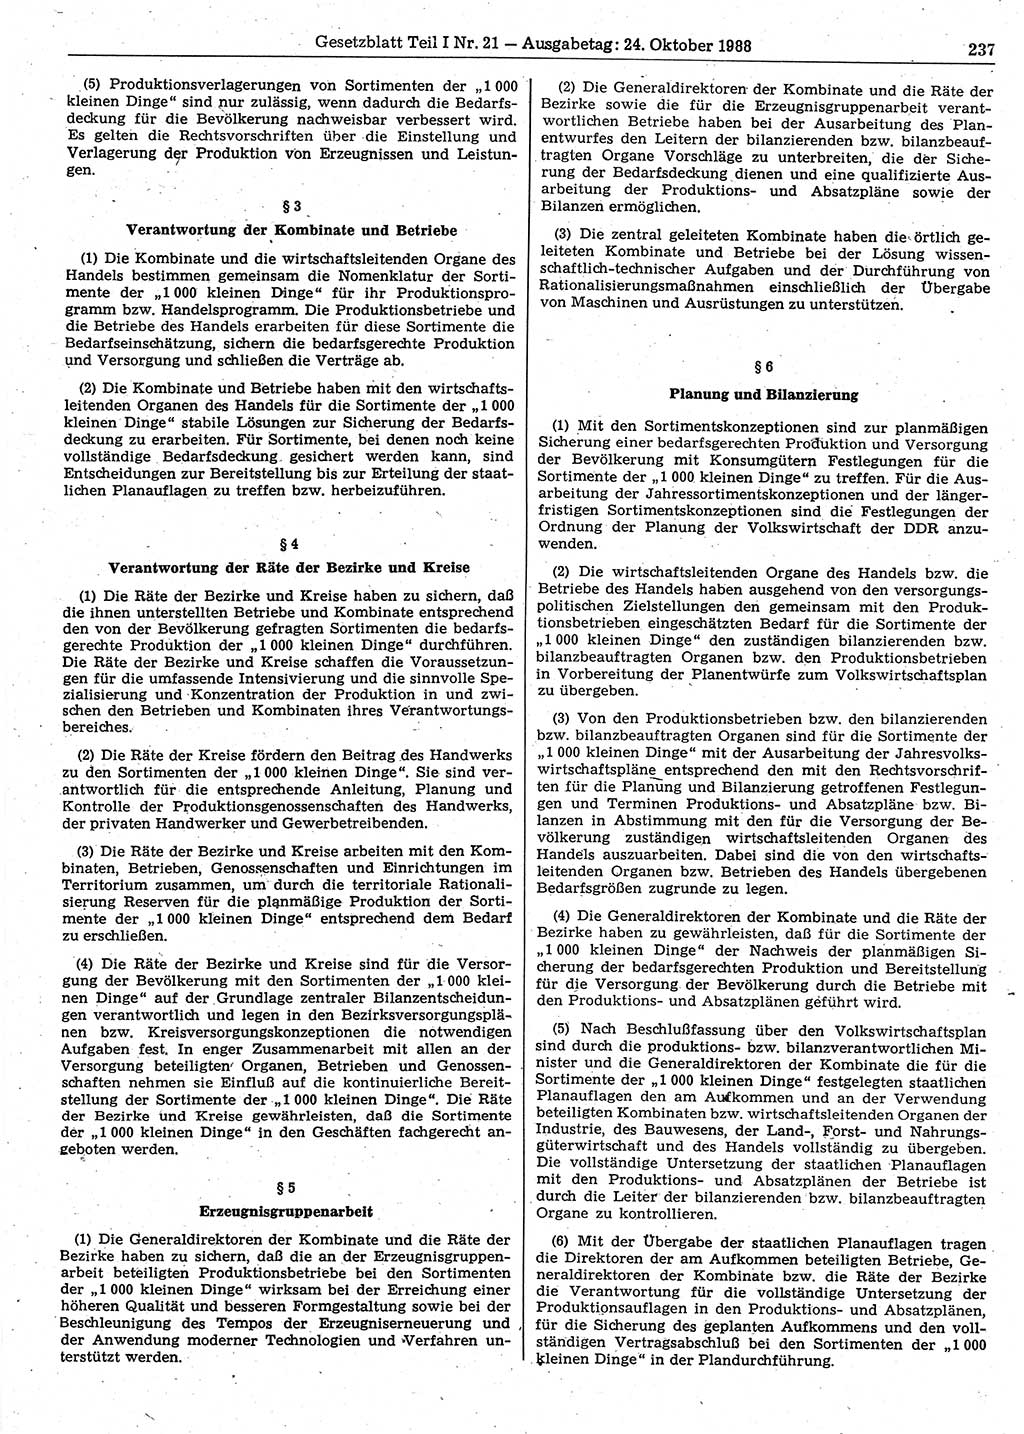 Gesetzblatt (GBl.) der Deutschen Demokratischen Republik (DDR) Teil Ⅰ 1988, Seite 237 (GBl. DDR Ⅰ 1988, S. 237)